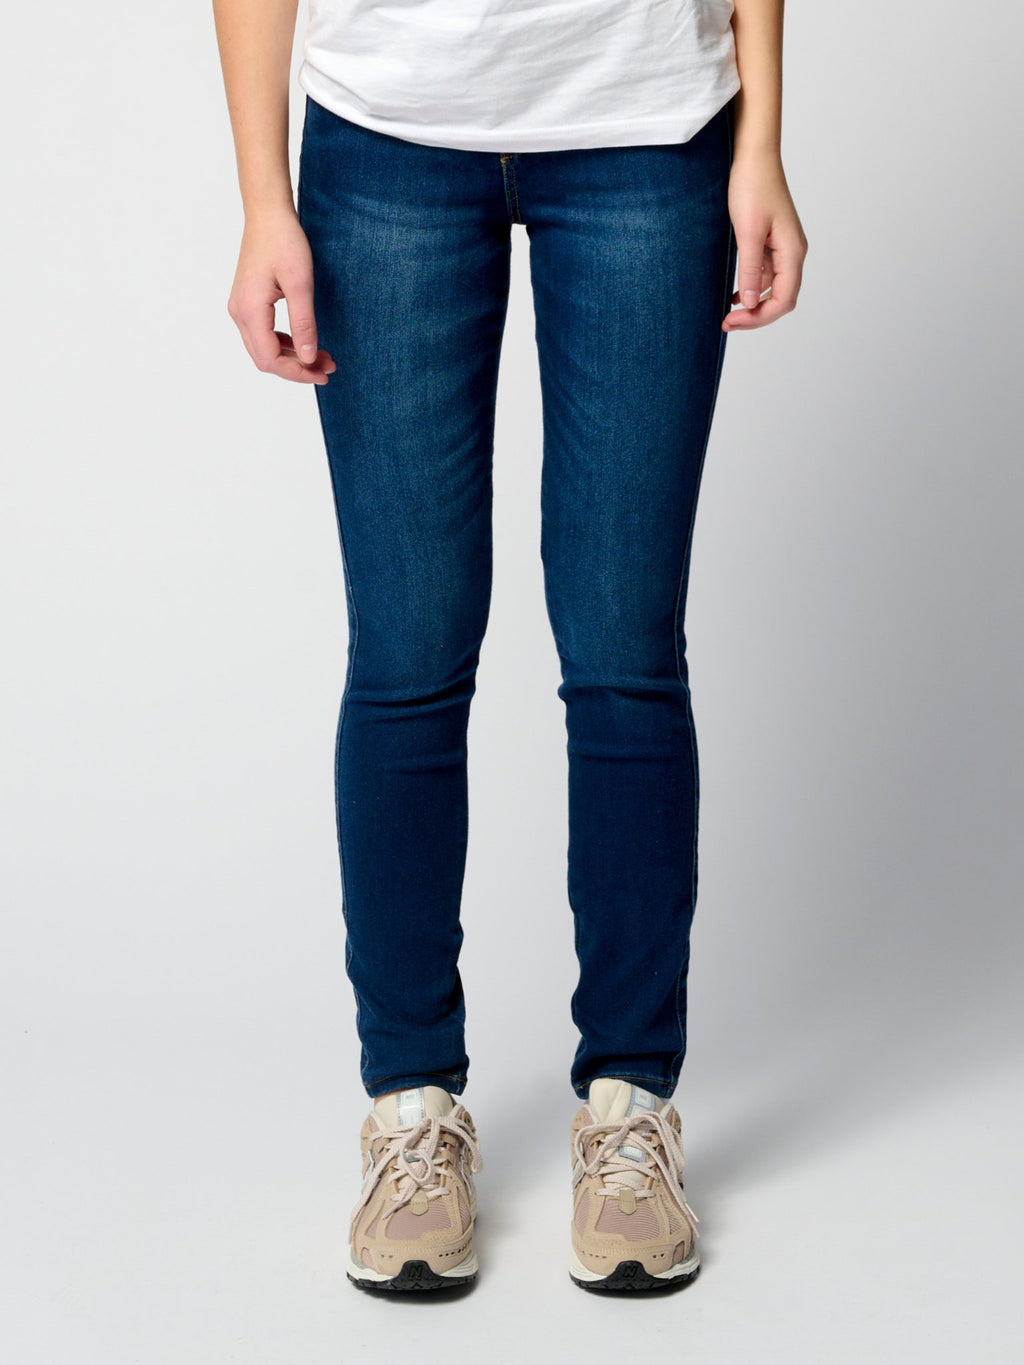 The Original Performance Skinny Jeans ™ ️ Ženy - obchod s balíkom (2 ks)